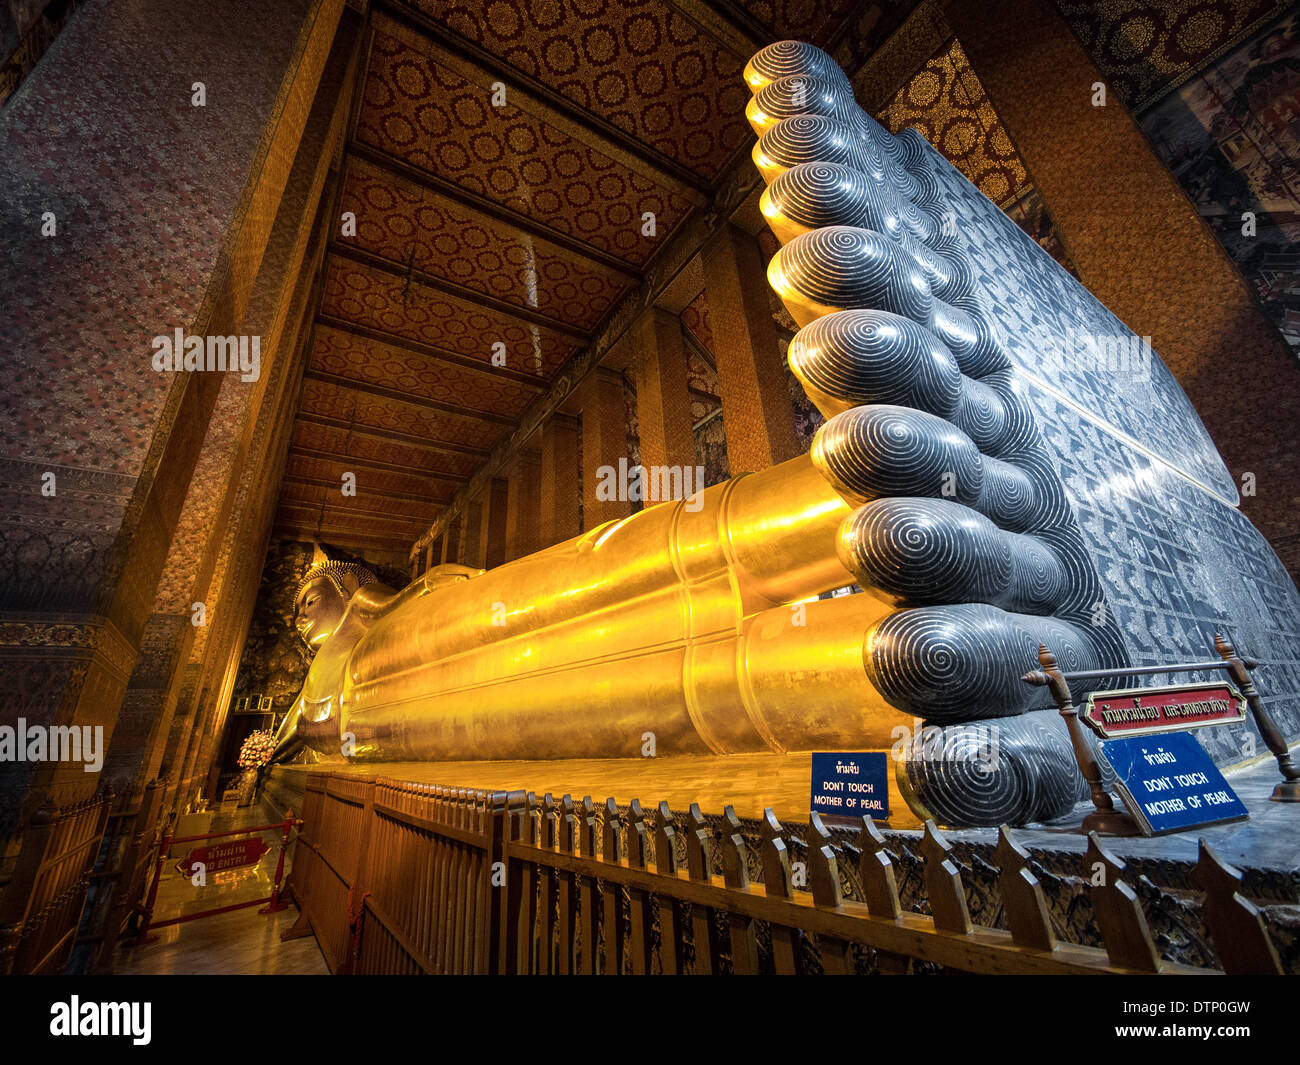 The Reclining Buddha at Wat Pho, Bangkok, Thailand. Stock Photo